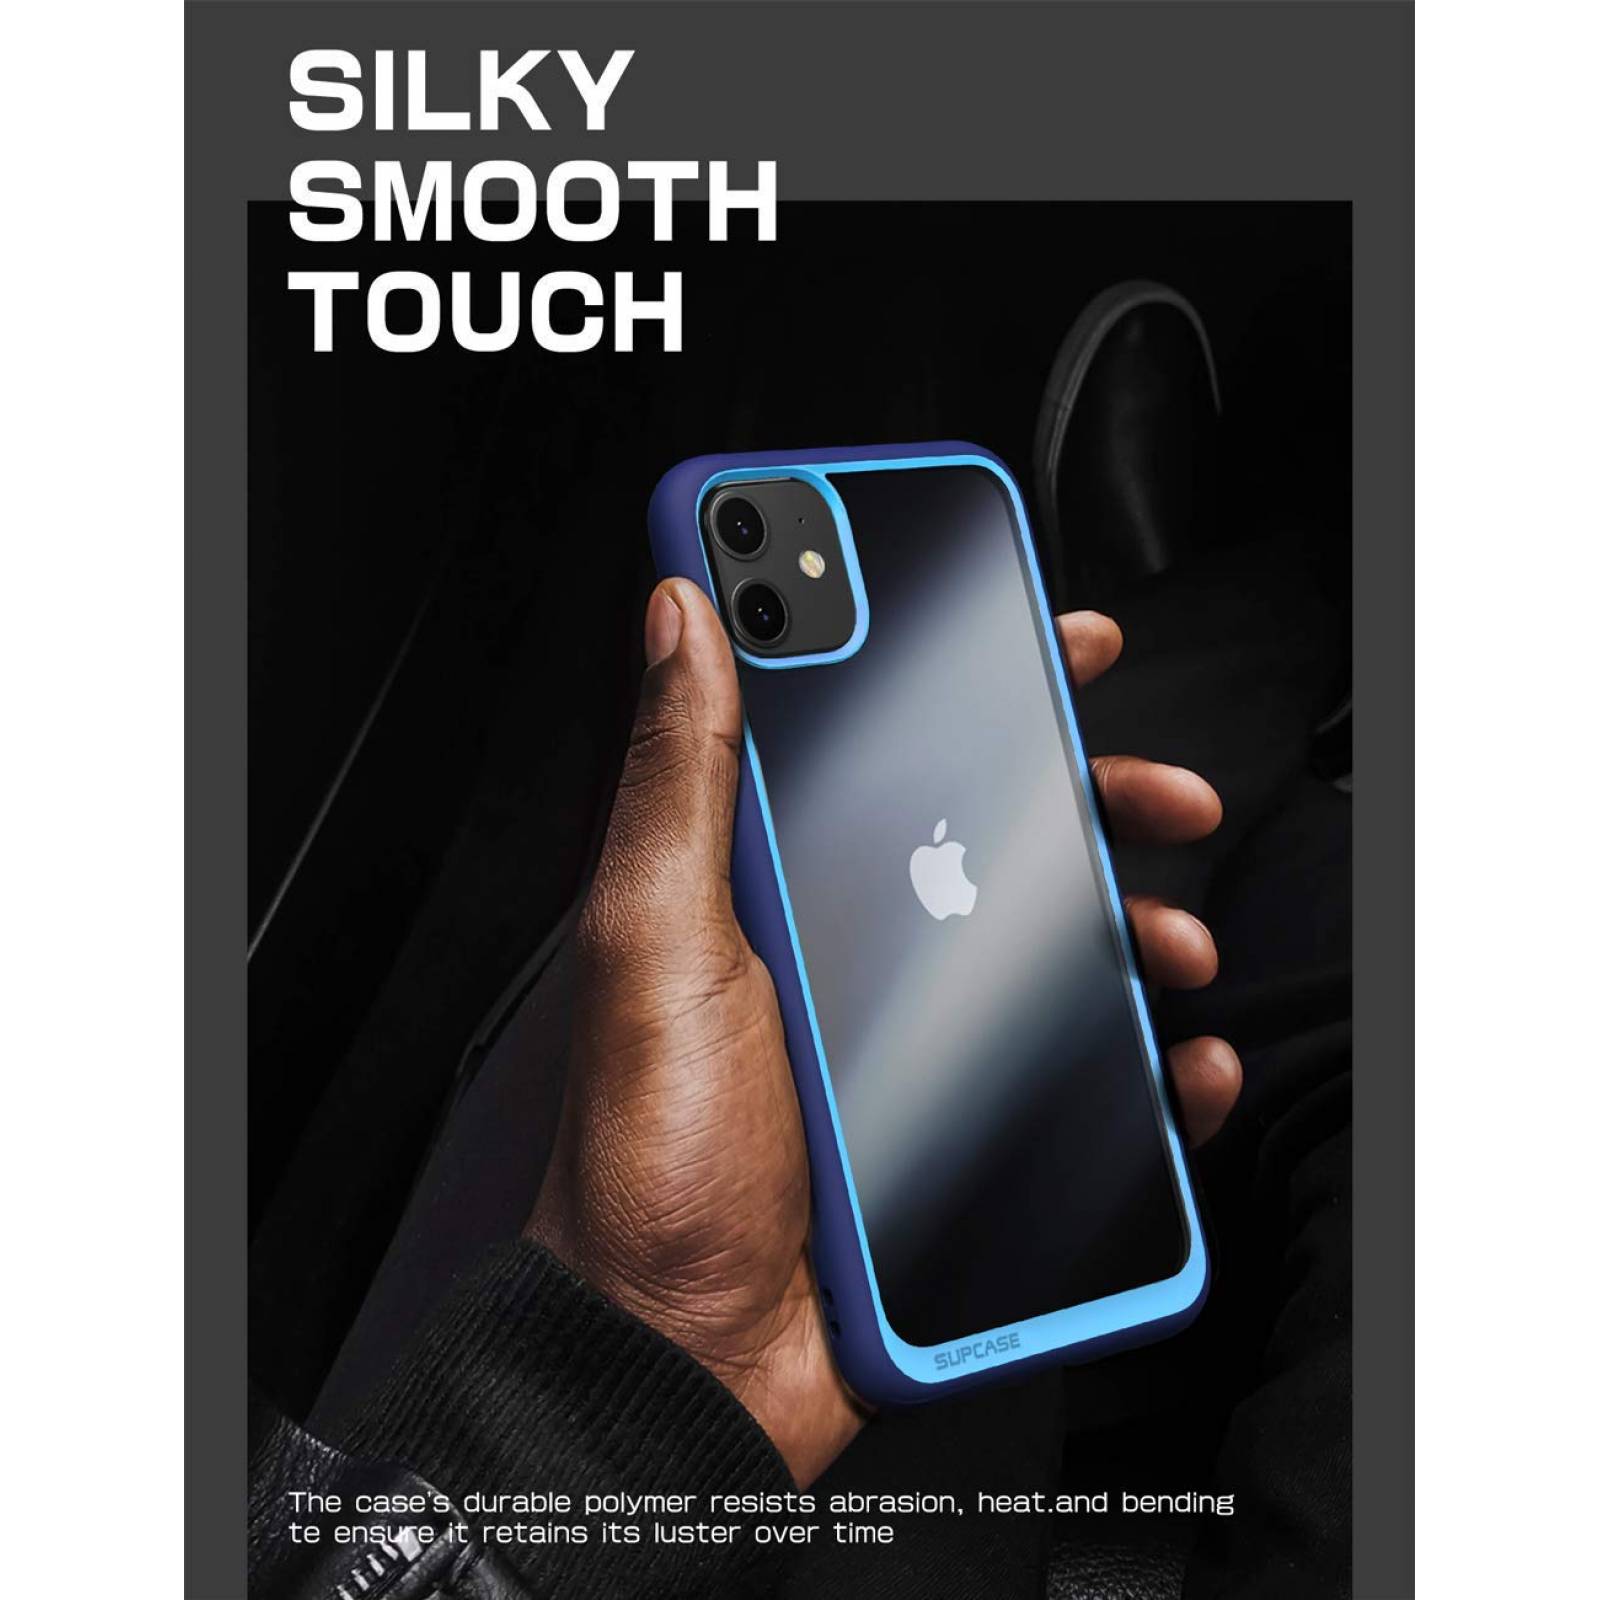 Funda iPhone 11 Supcase Ub Style Uso Rudo - Azul